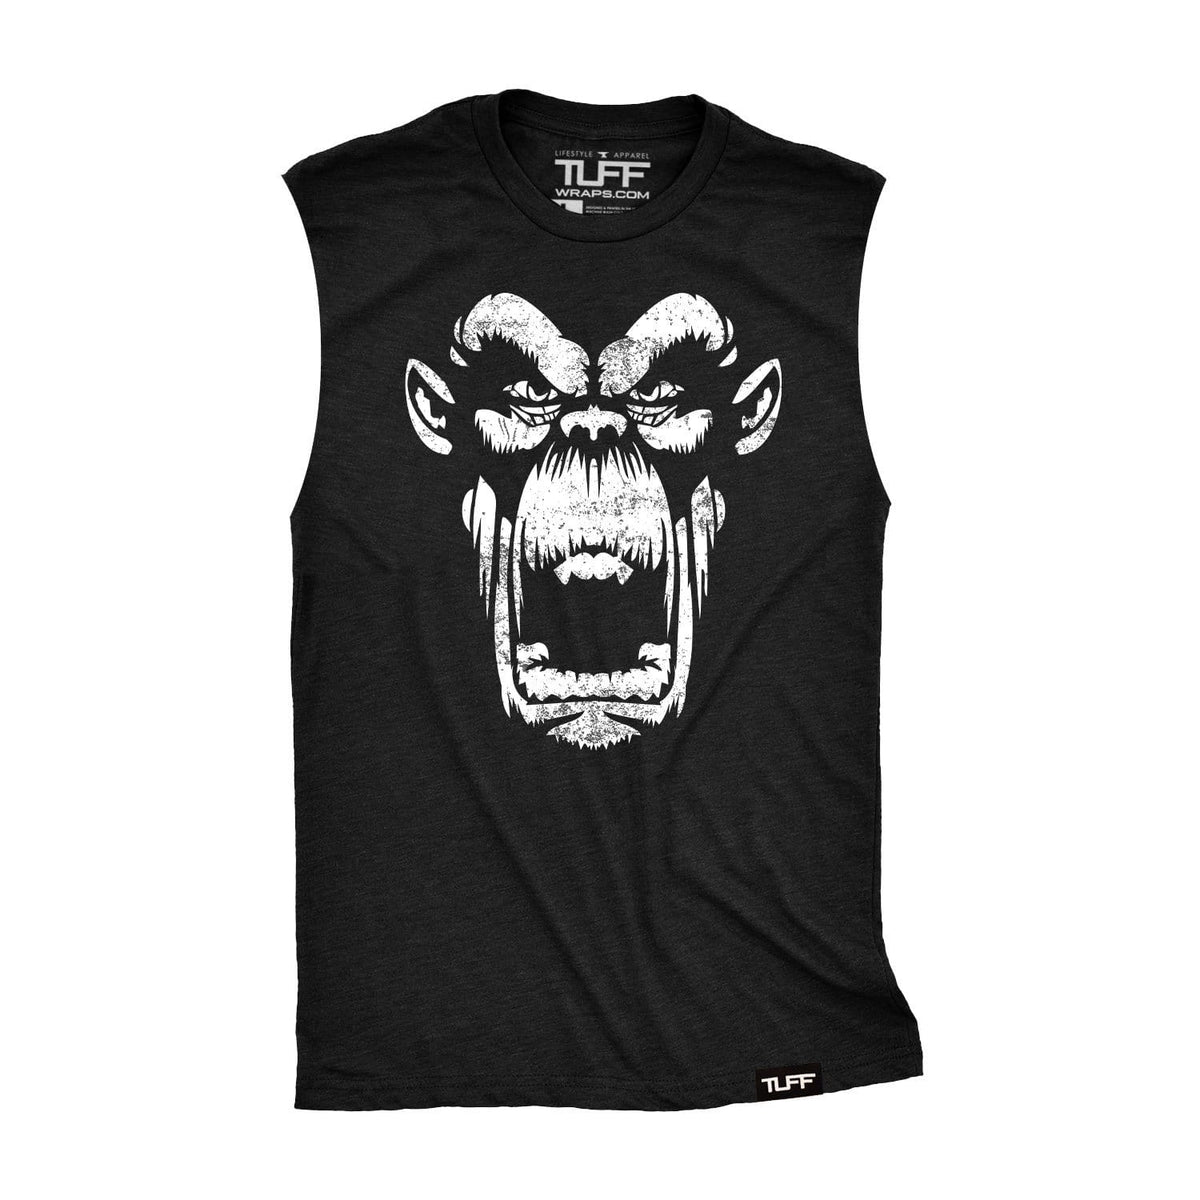 Gorilla TUFF Raw Edge Muscle Tank S / Black TuffWraps.com